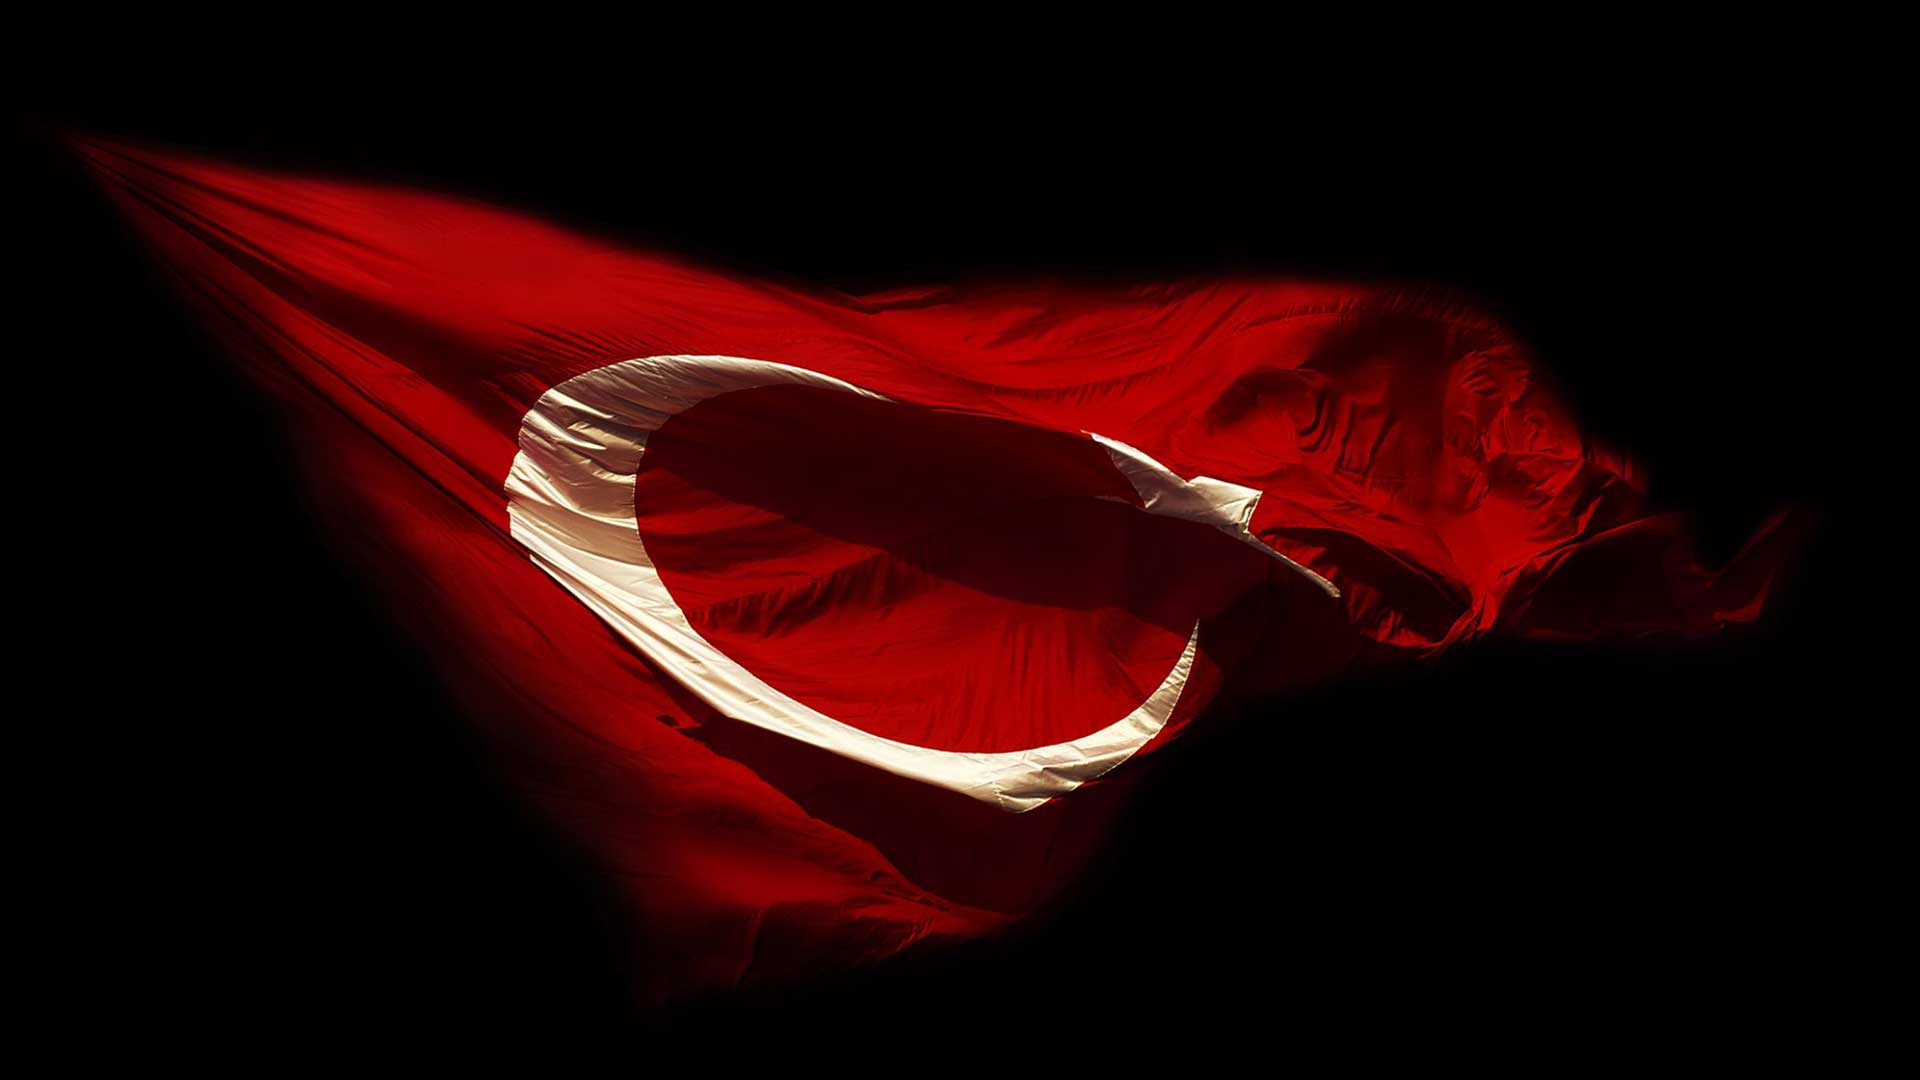 turk bayragi resimleri 2020 12